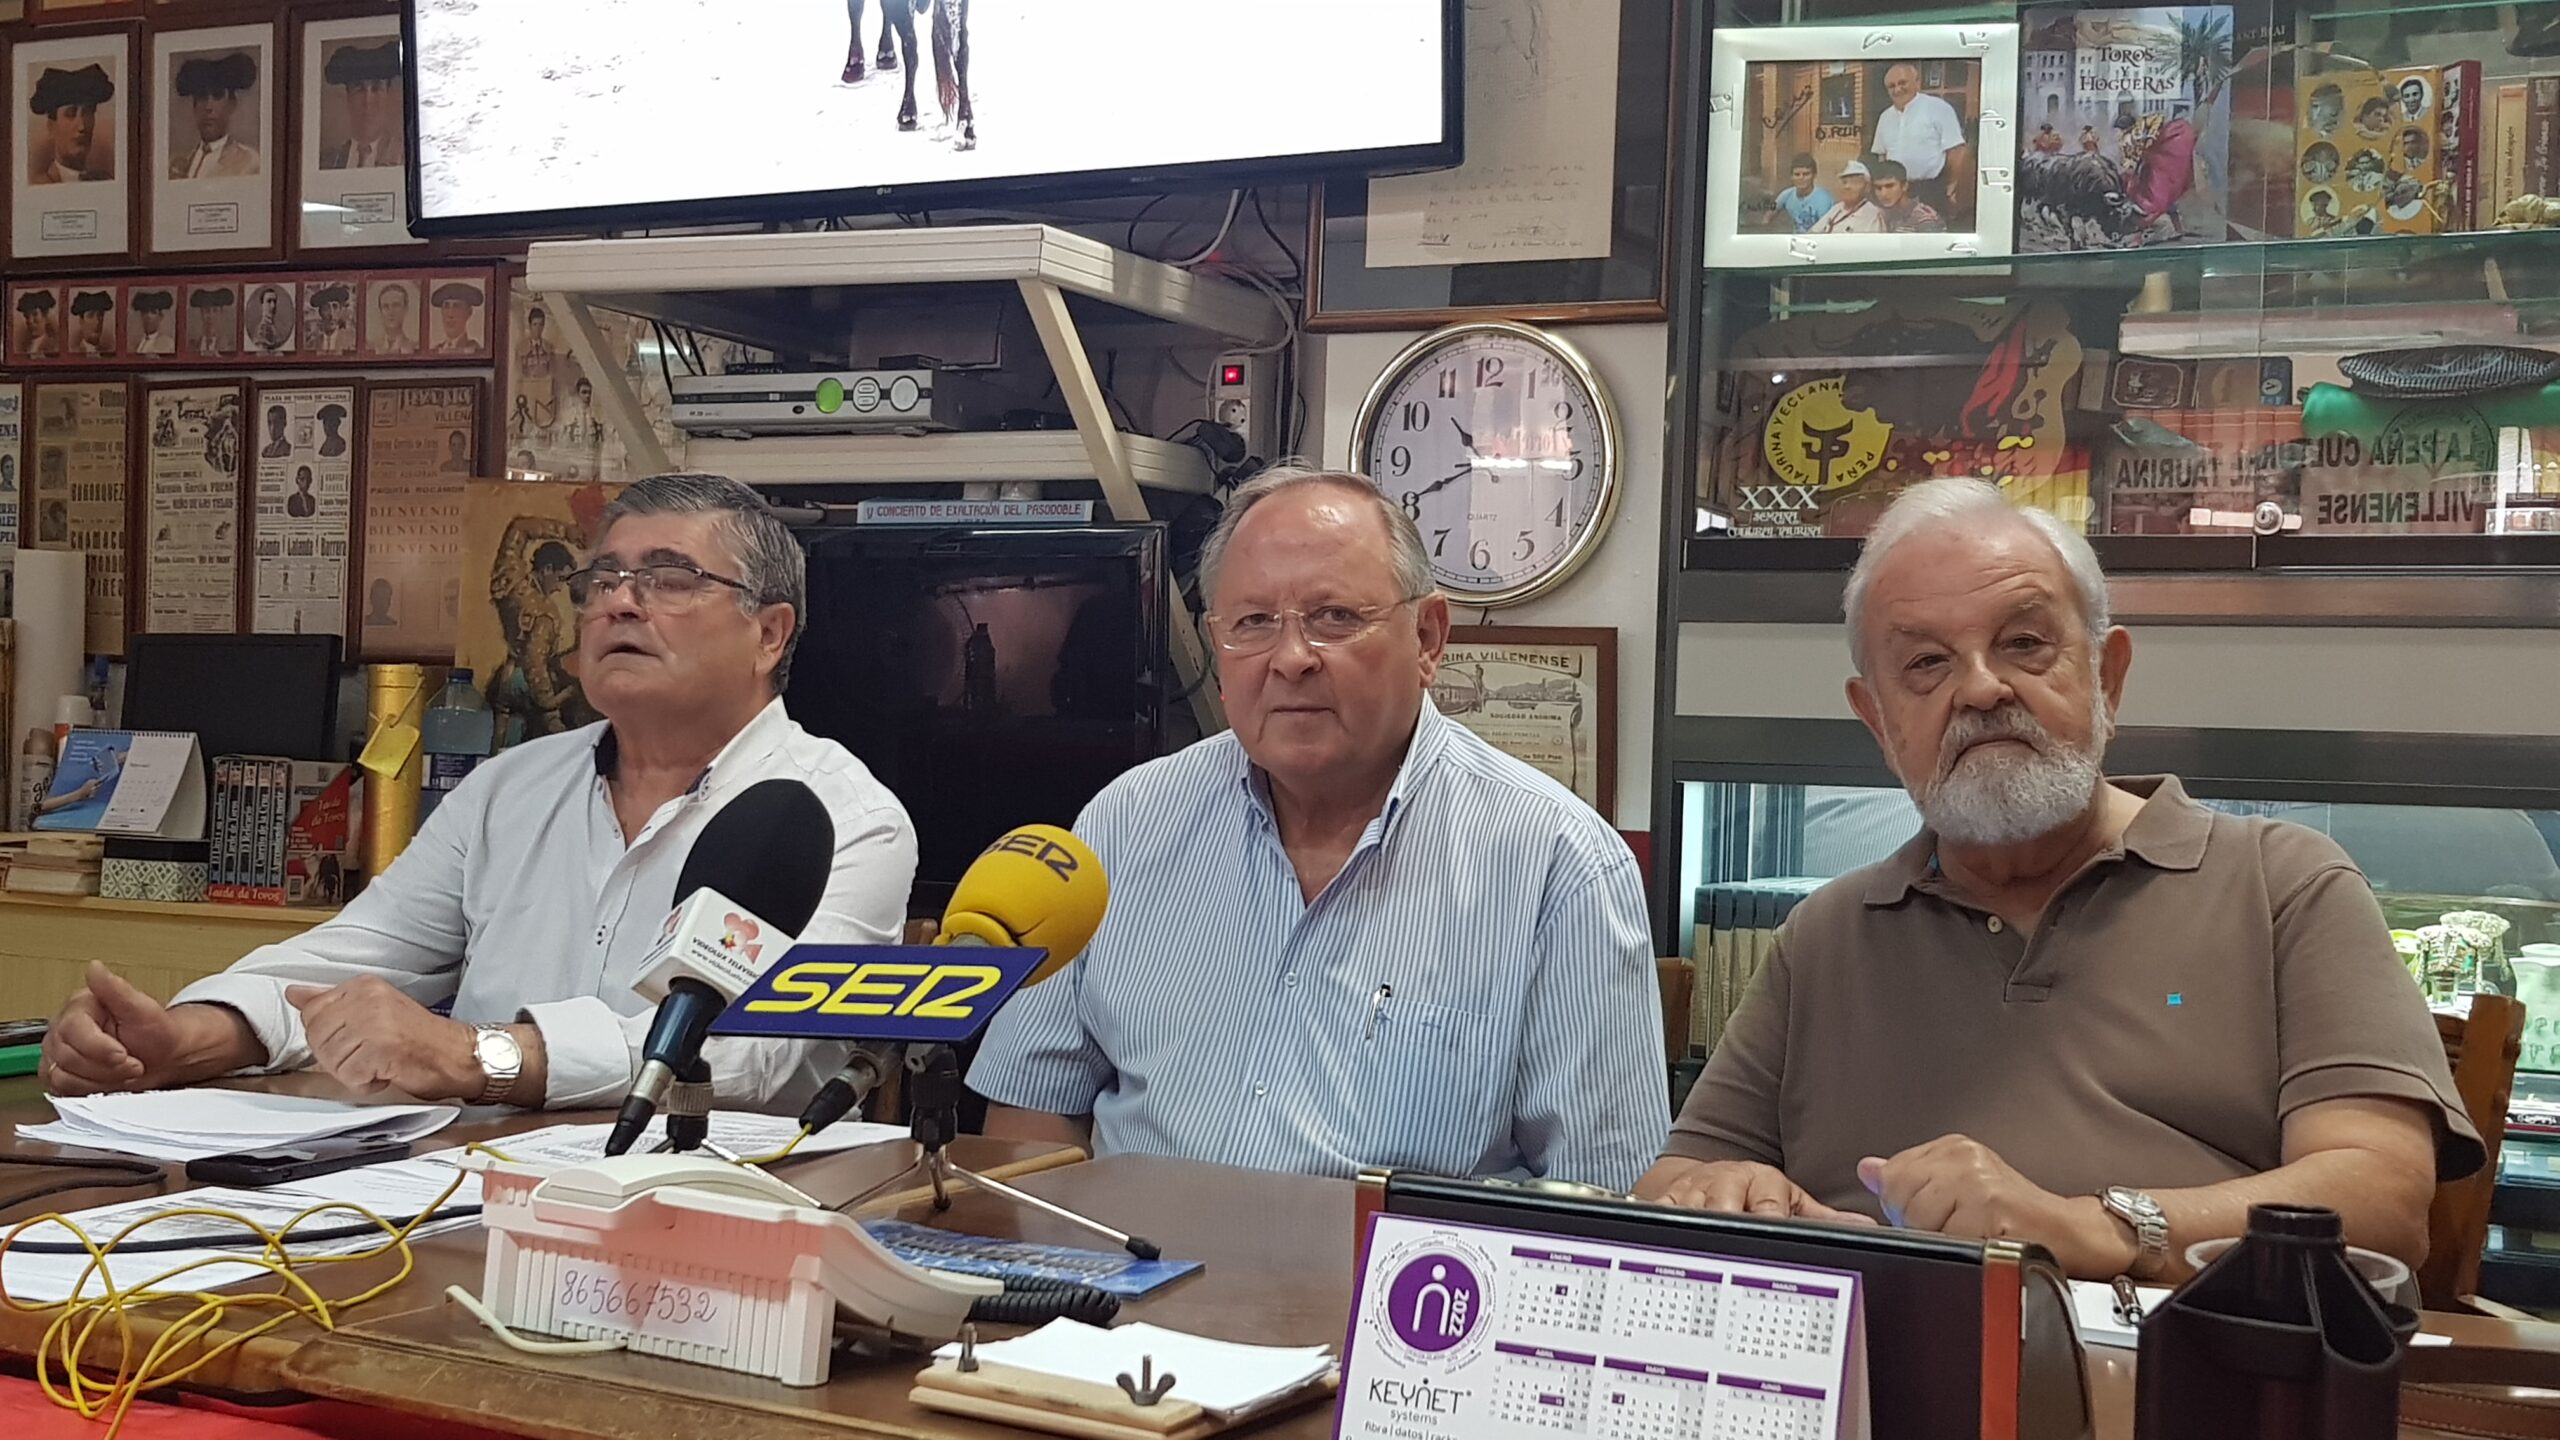 La Peña Taurina estudia emprender acciones legales contra el Ayuntamiento de Villena tras la negativa de cesión del coso